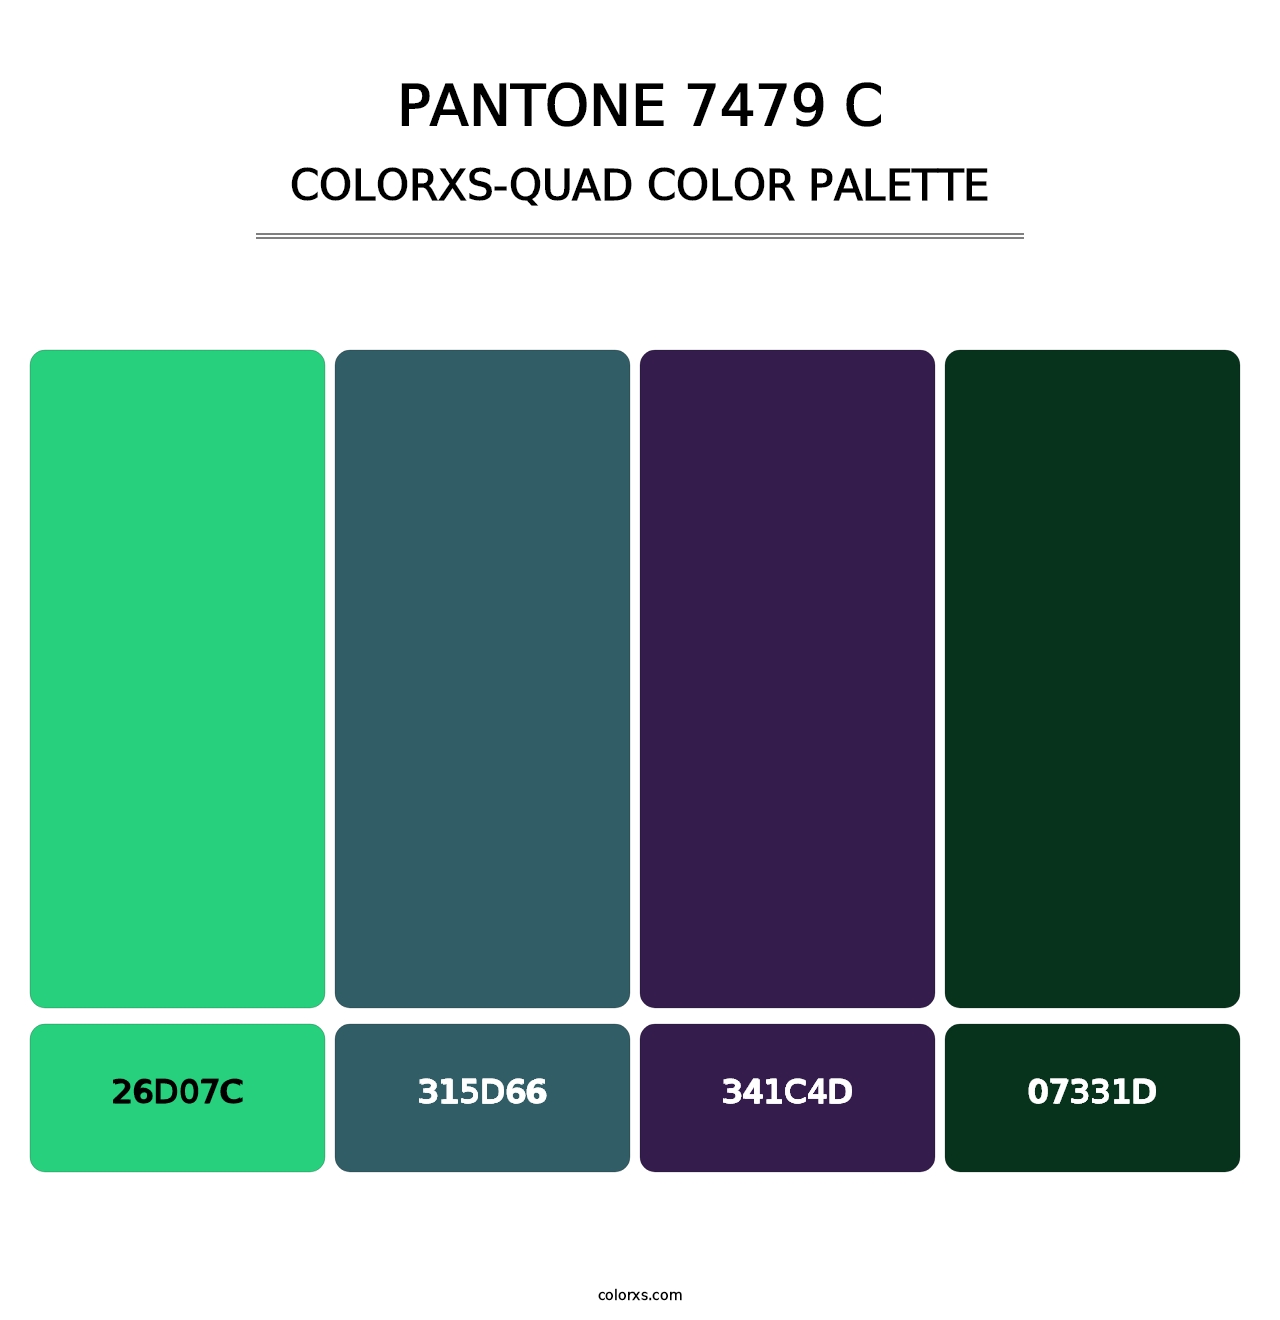 PANTONE 7479 C - Colorxs Quad Palette